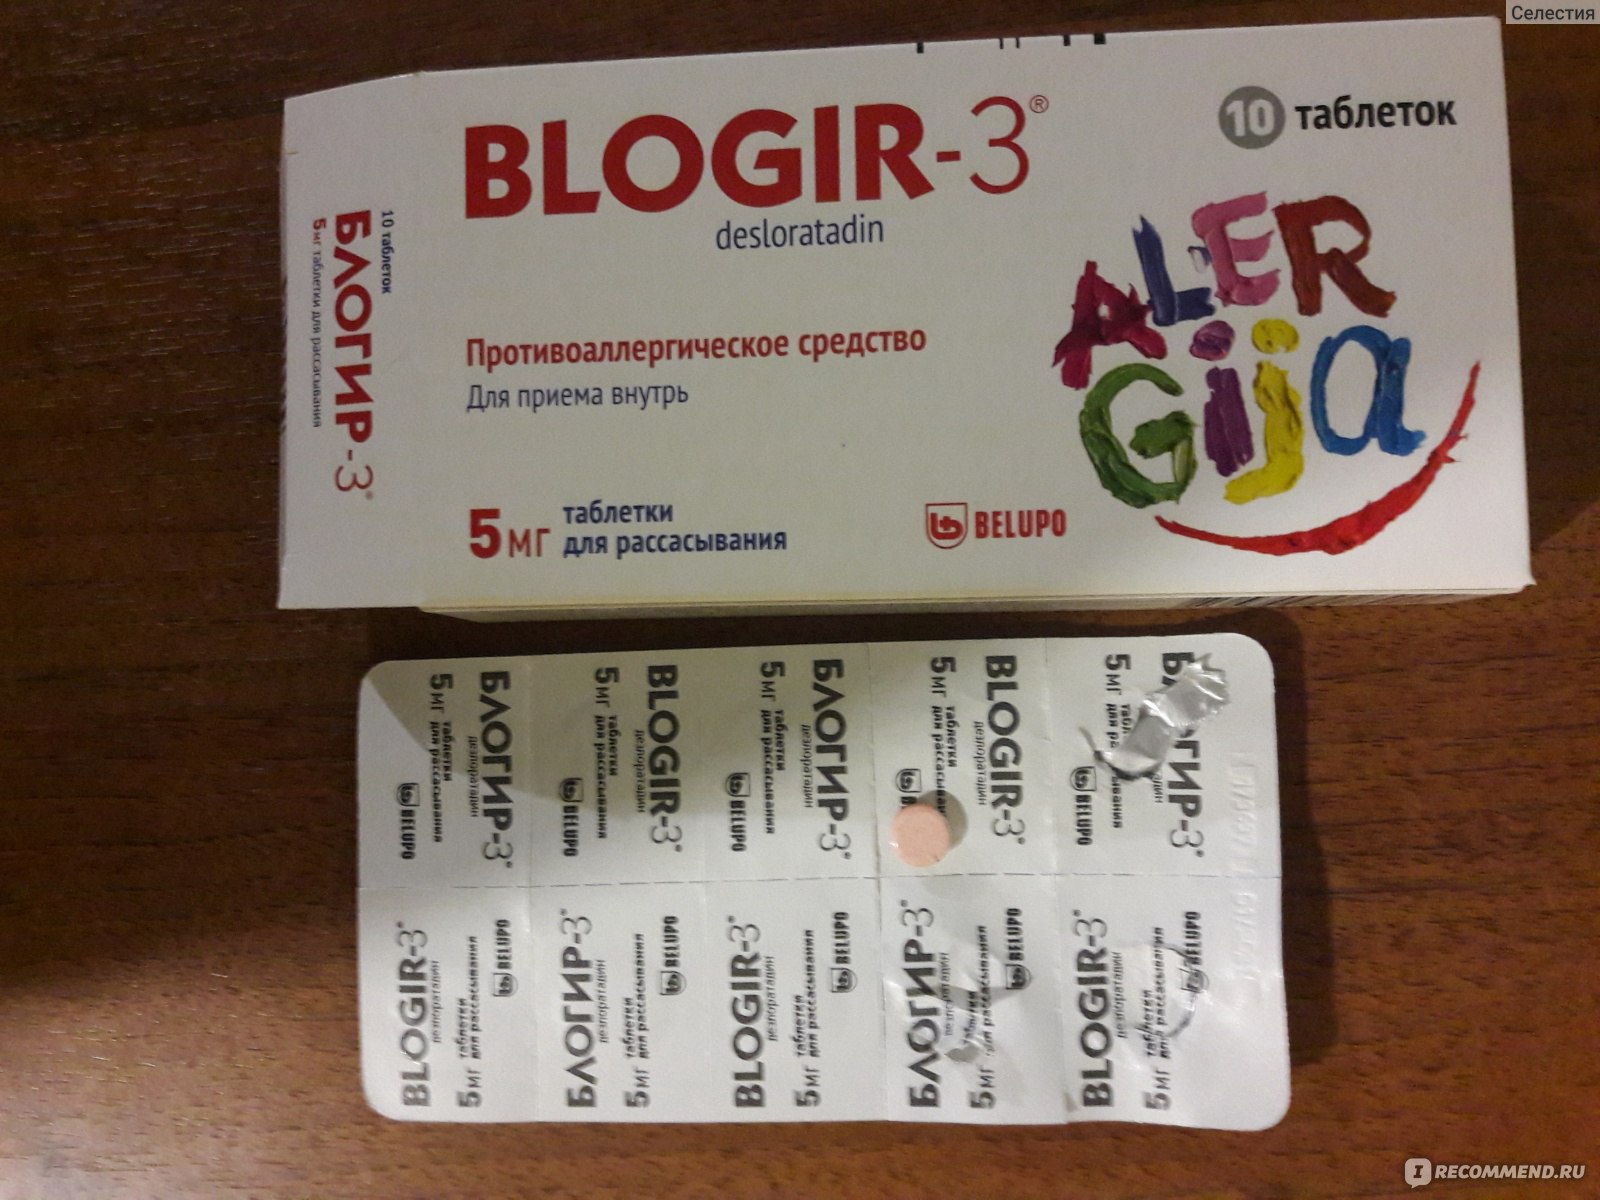 Блогир-3 – эффективные таблетки от аллергии, в том числе и сенной лихорадке